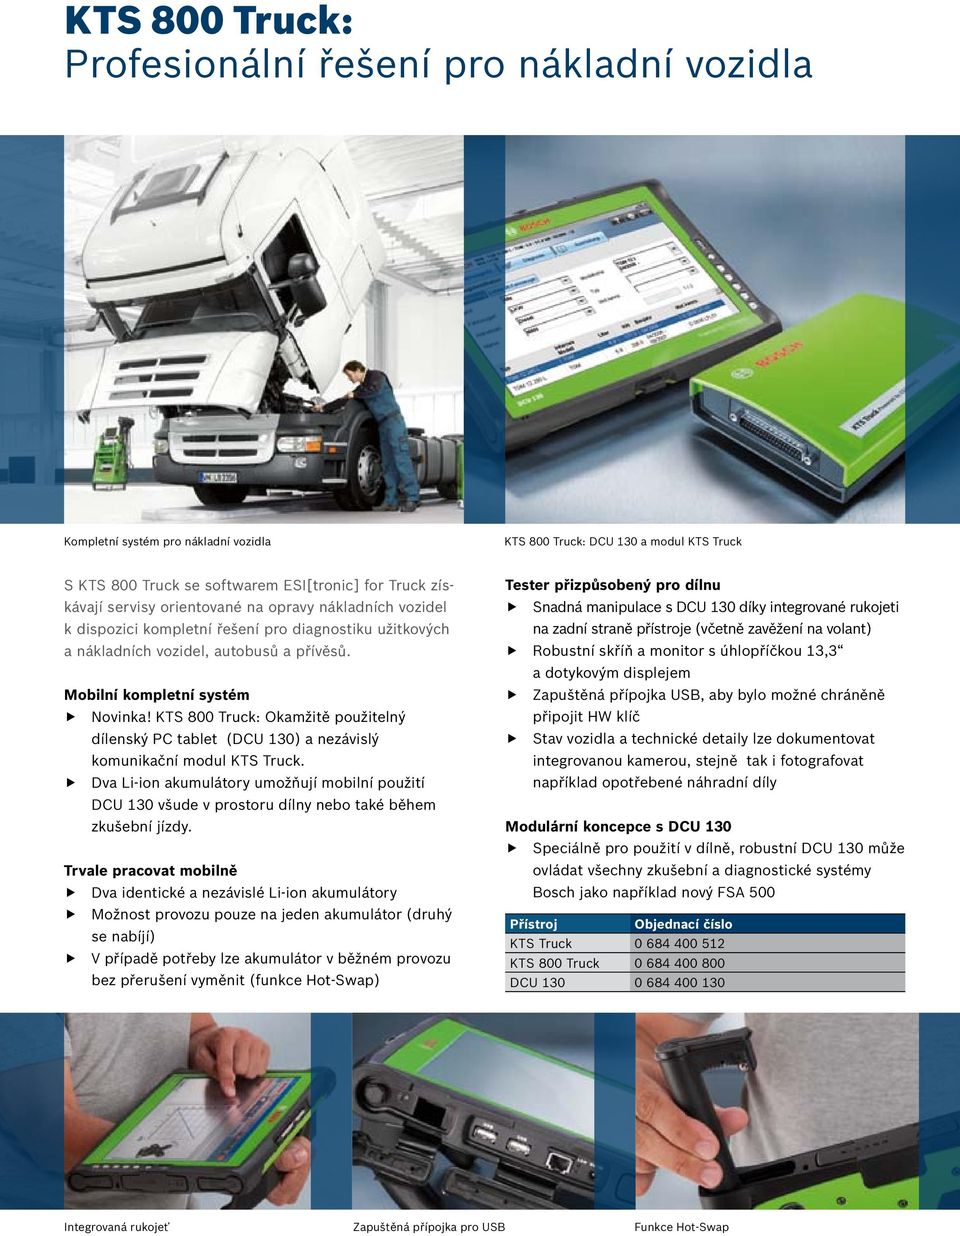 KTS 800 Truck: Okamžitě použitelný dílenský PC tablet (DCU 130) a nezávislý komunikační modul KTS Truck.